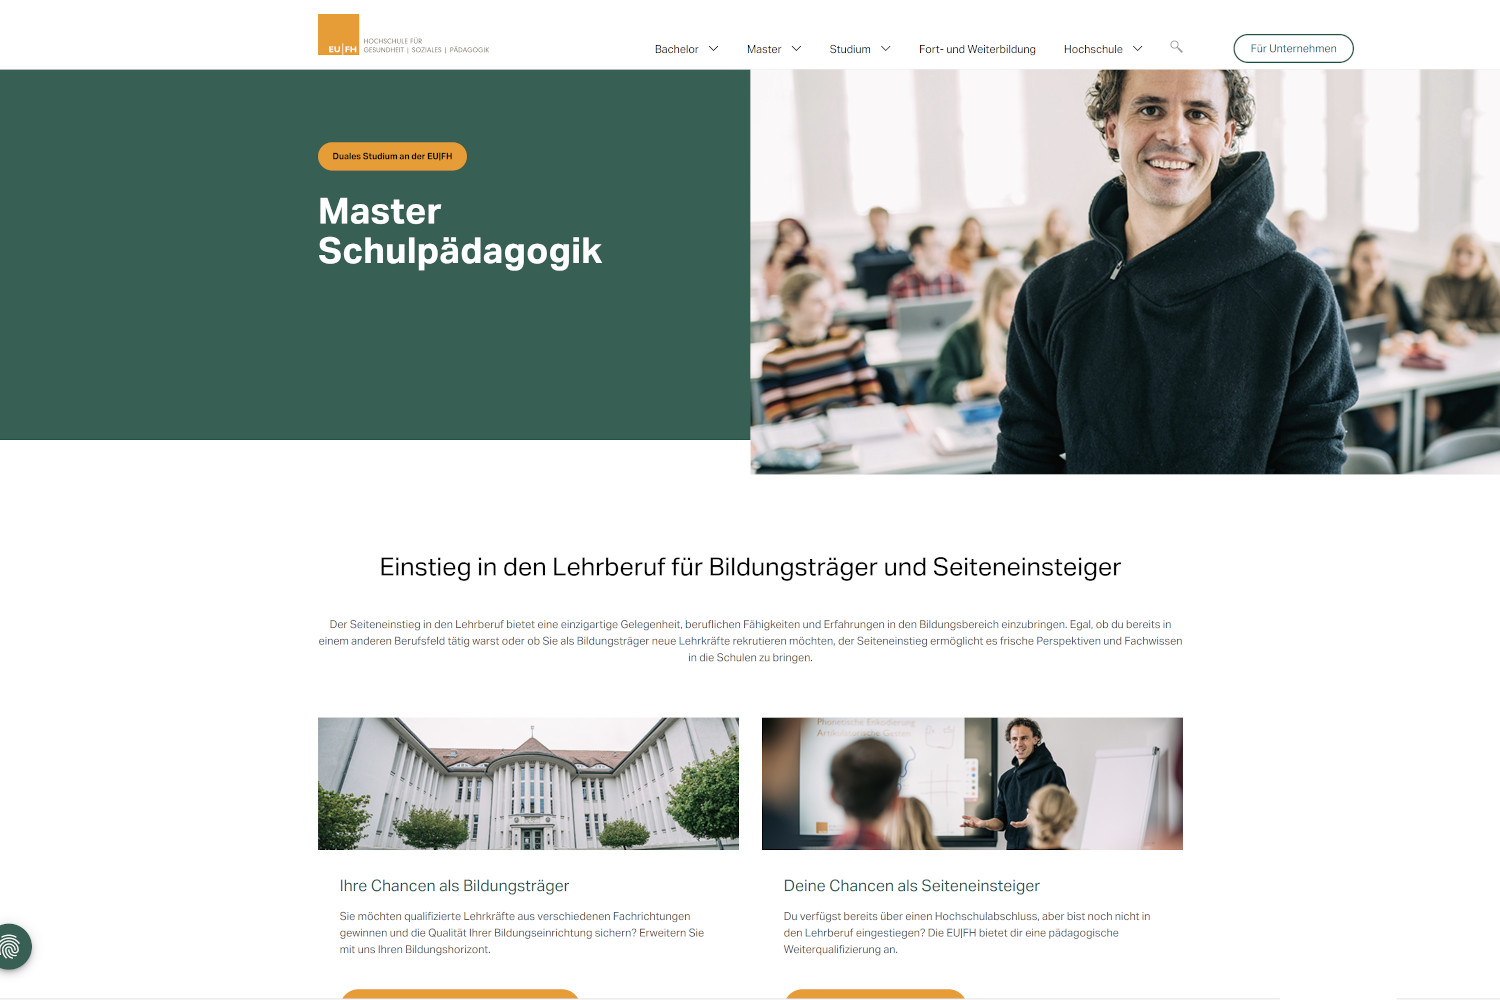 Das Bild zeigt die Homepage des dualen Studiengangs Master Schulpädagogik der EUFH in Rostock und Berlin